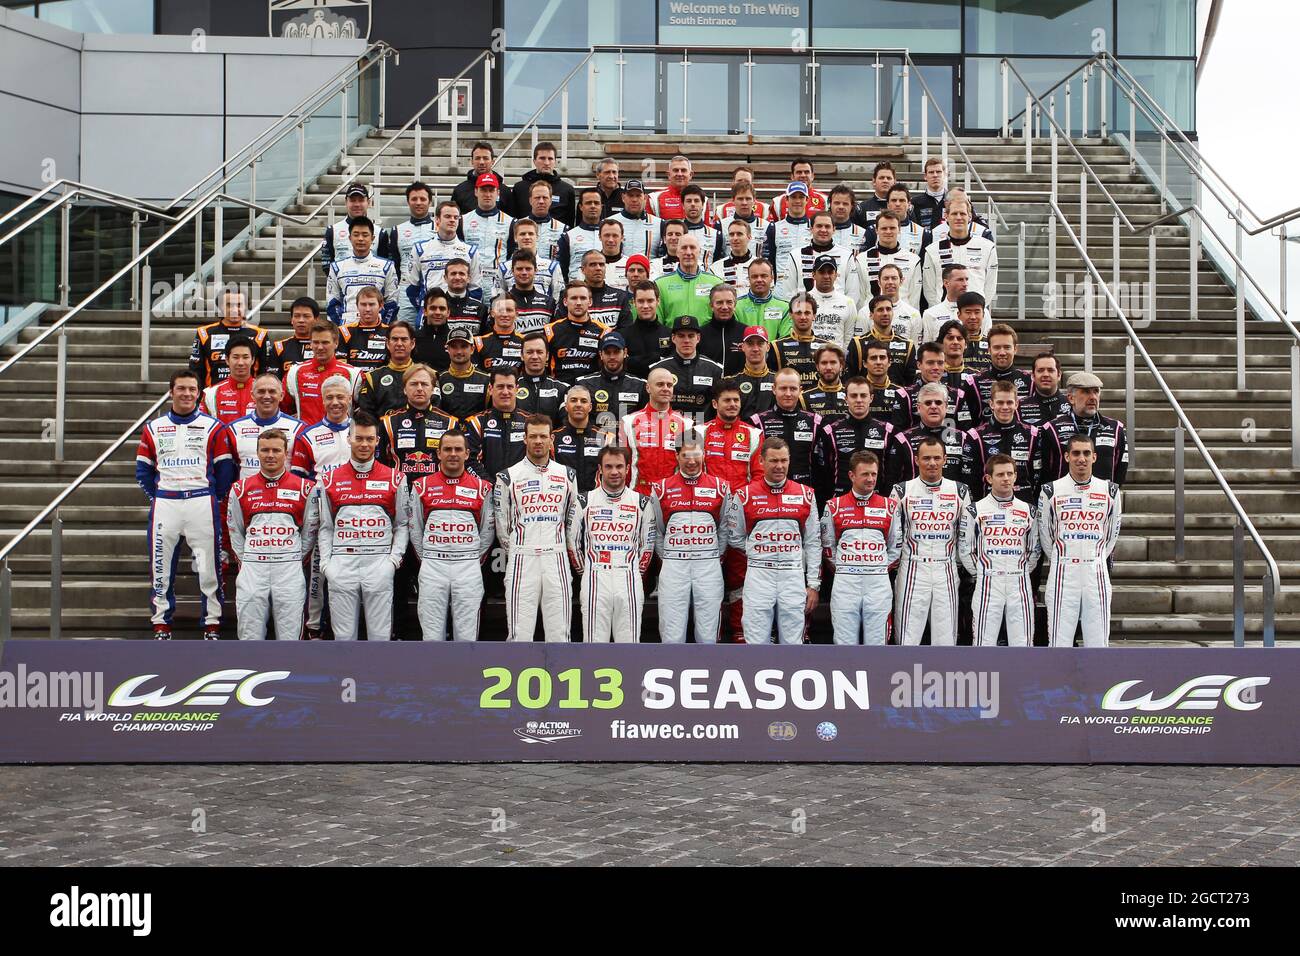 WEC 2013 inizio stagione foto di gruppo. Campionato Mondiale di Endurance FIA, turno 1, venerdì 12 aprile 2013. Silverstone, Inghilterra. Foto Stock